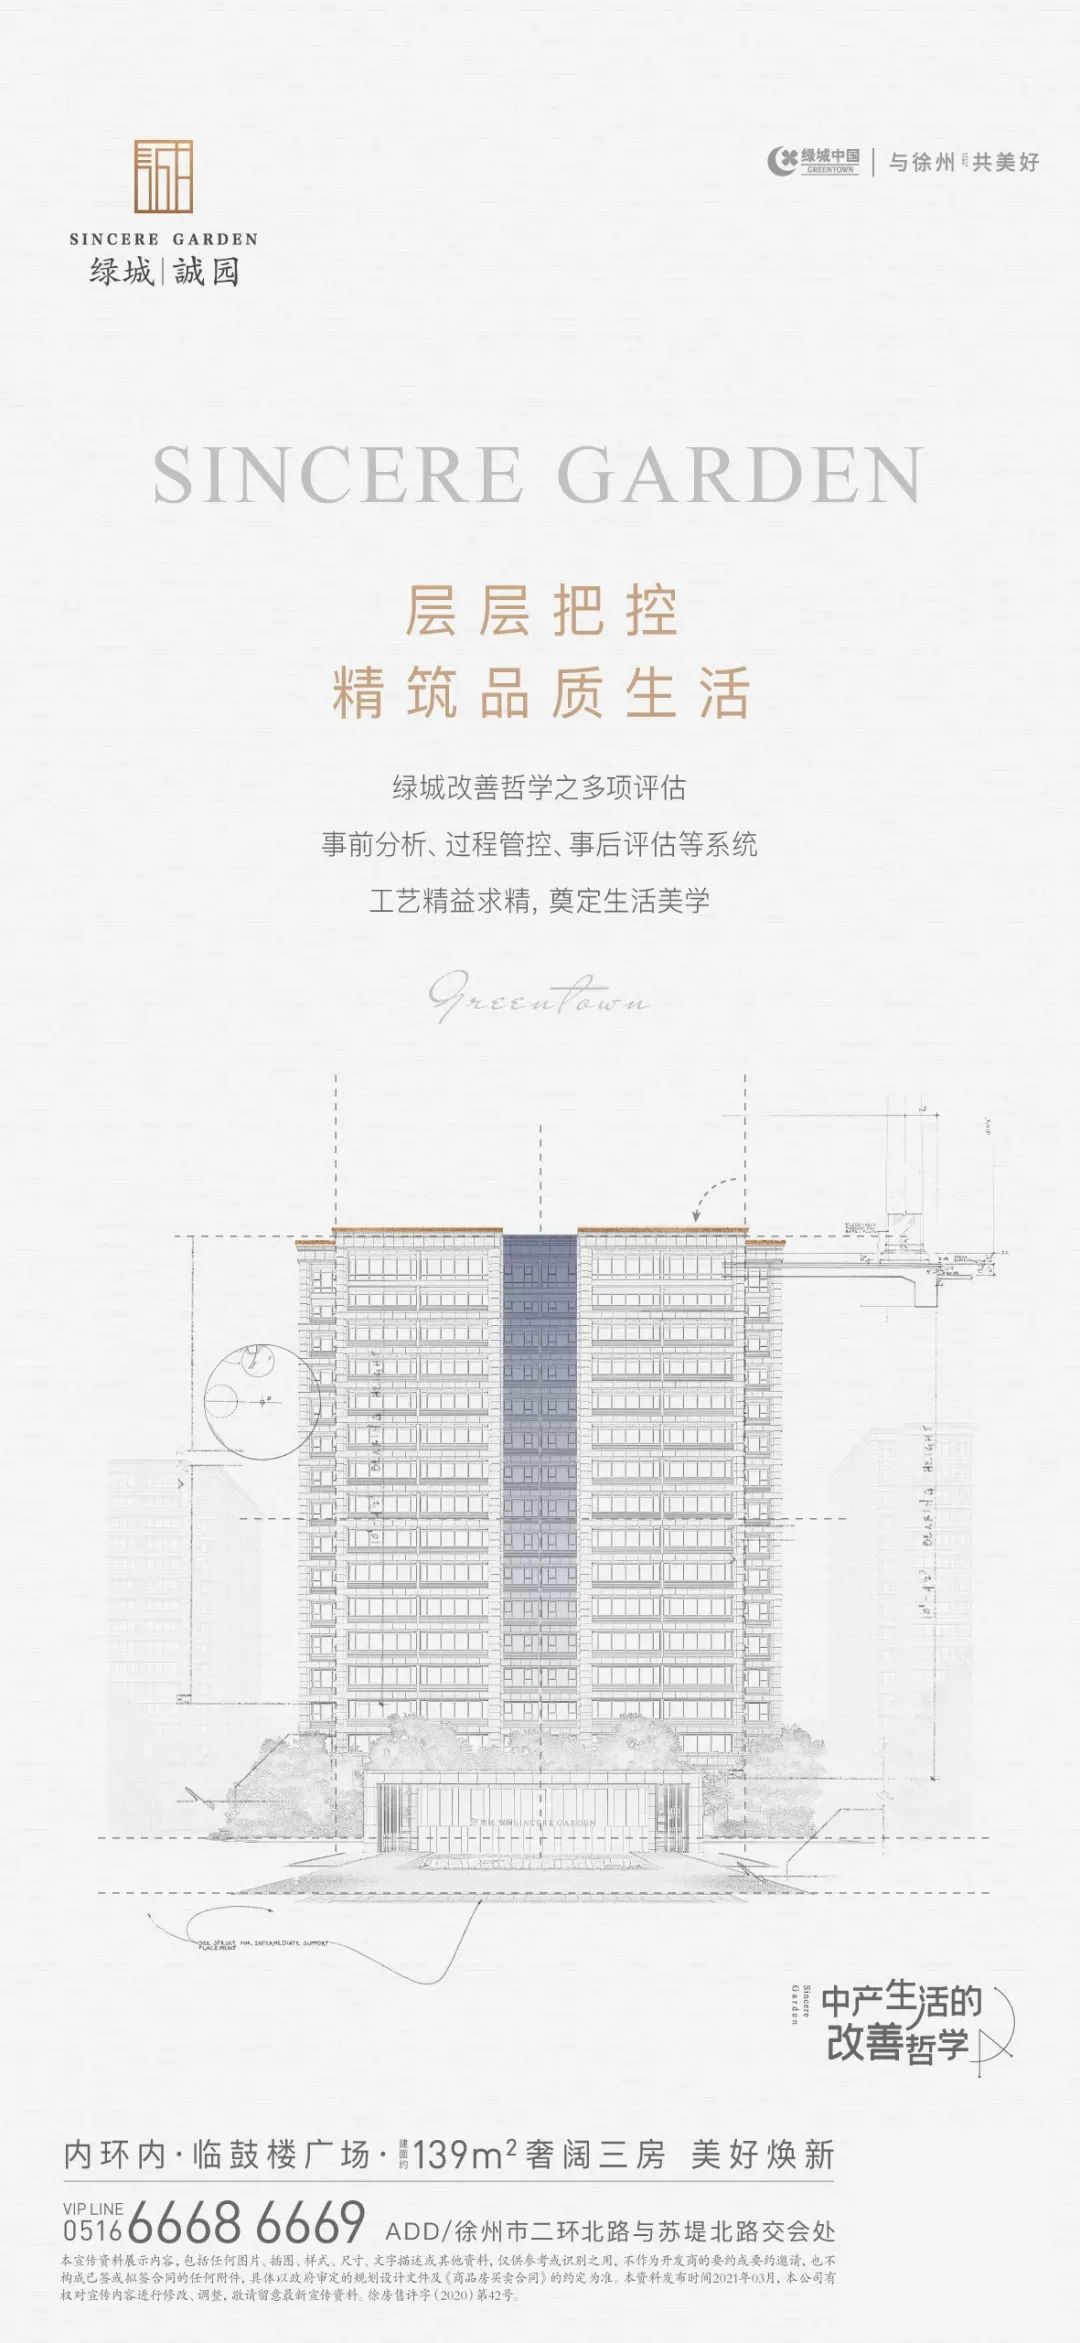 地产海报: 房地产工艺工法系列海报设计